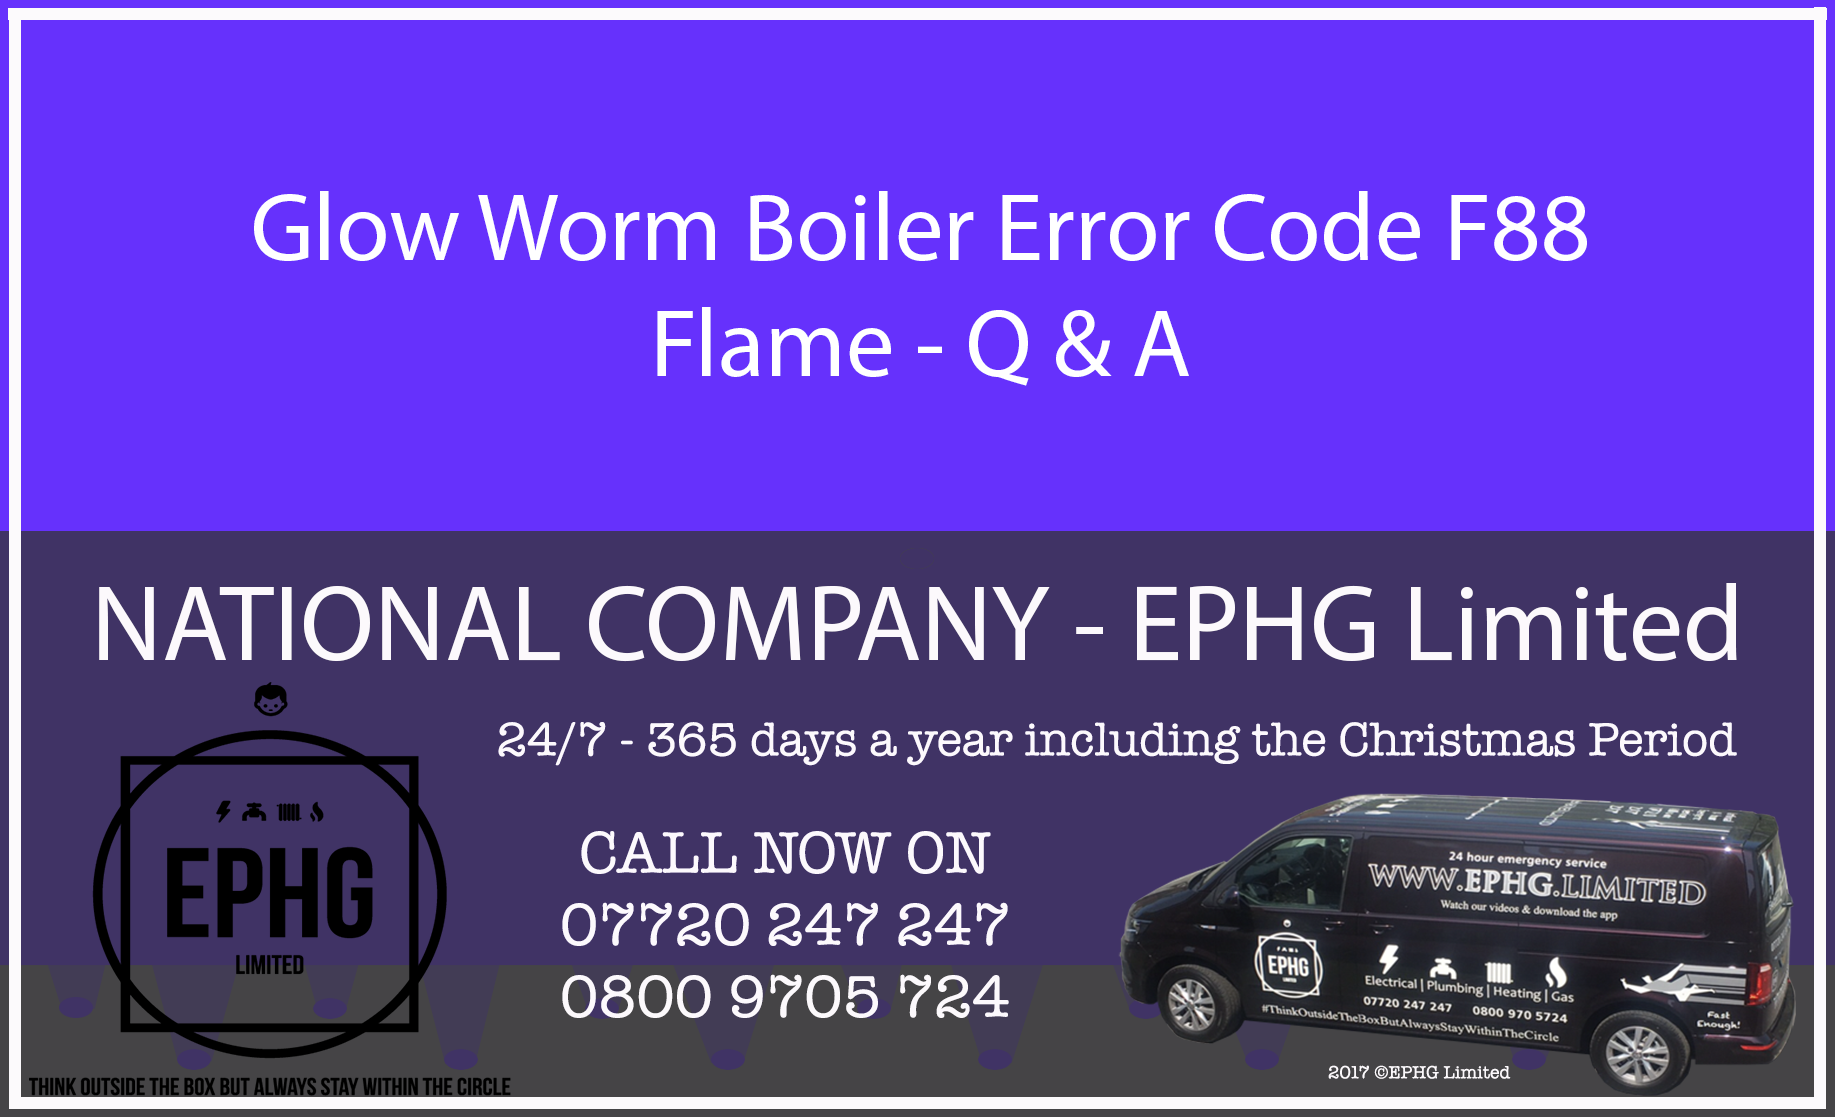 Glow-Worm boiler error code F.88